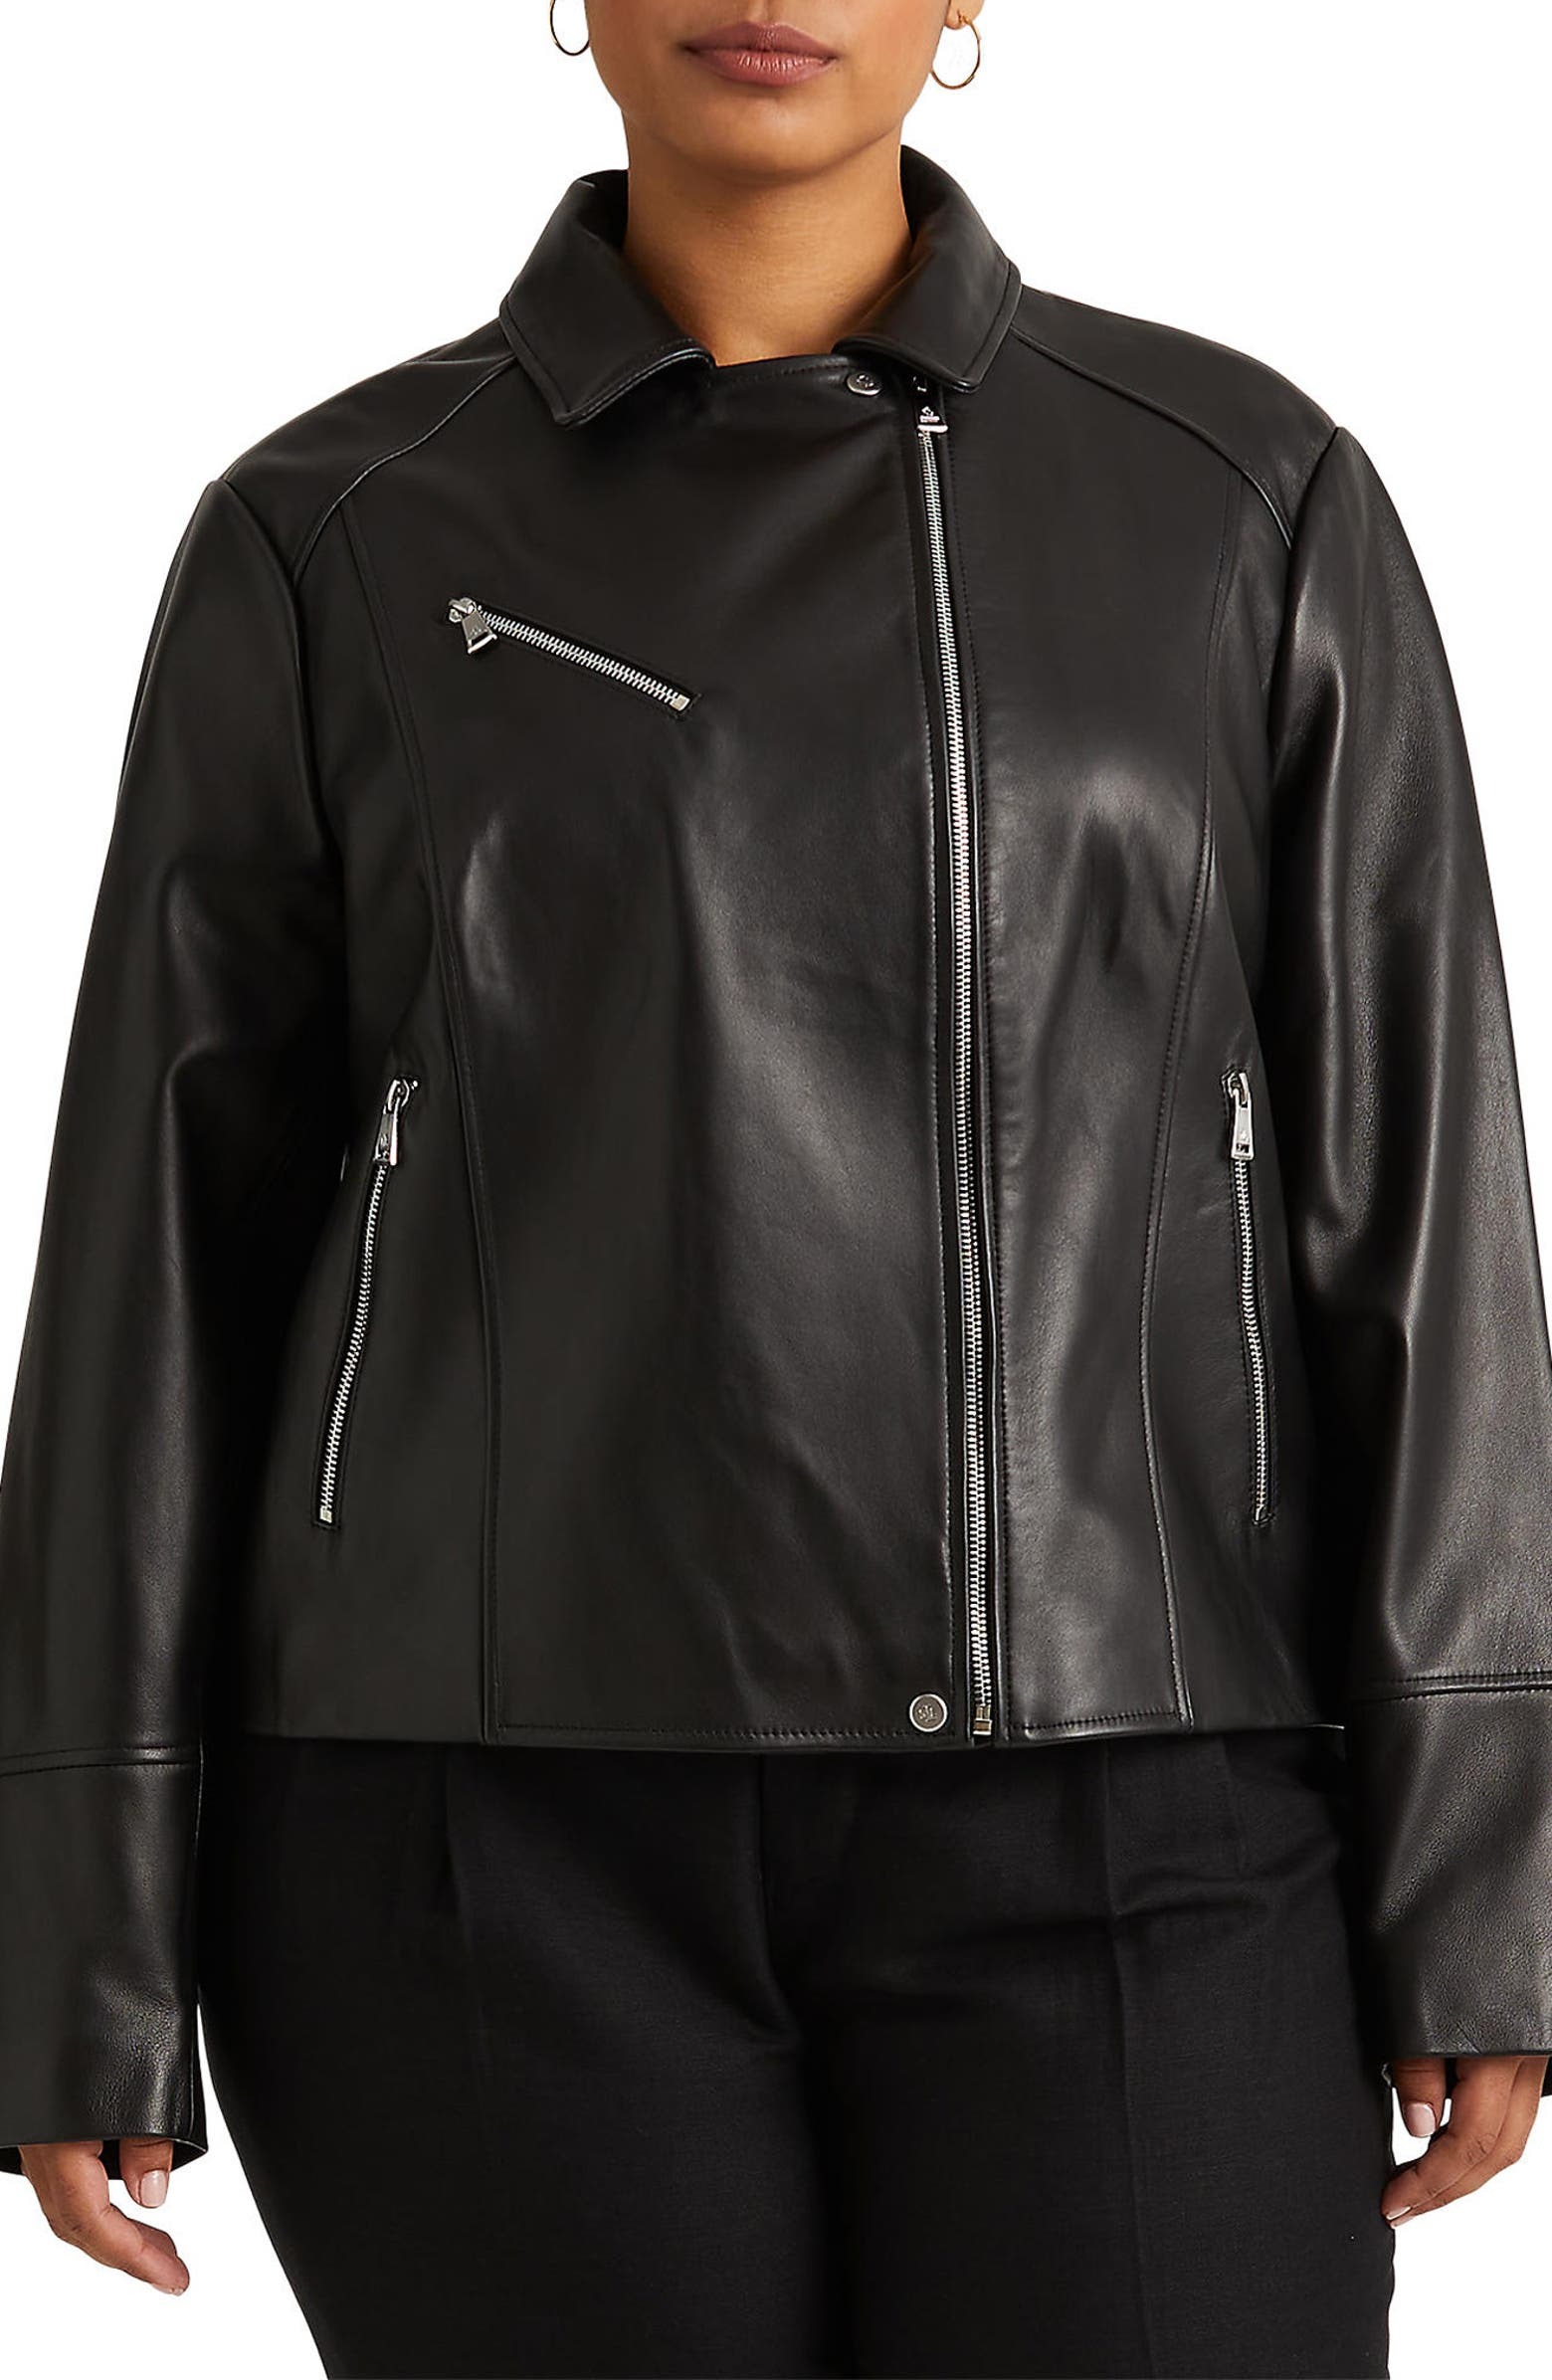 Lauren Ralph Lauren Leather Moto Jacket